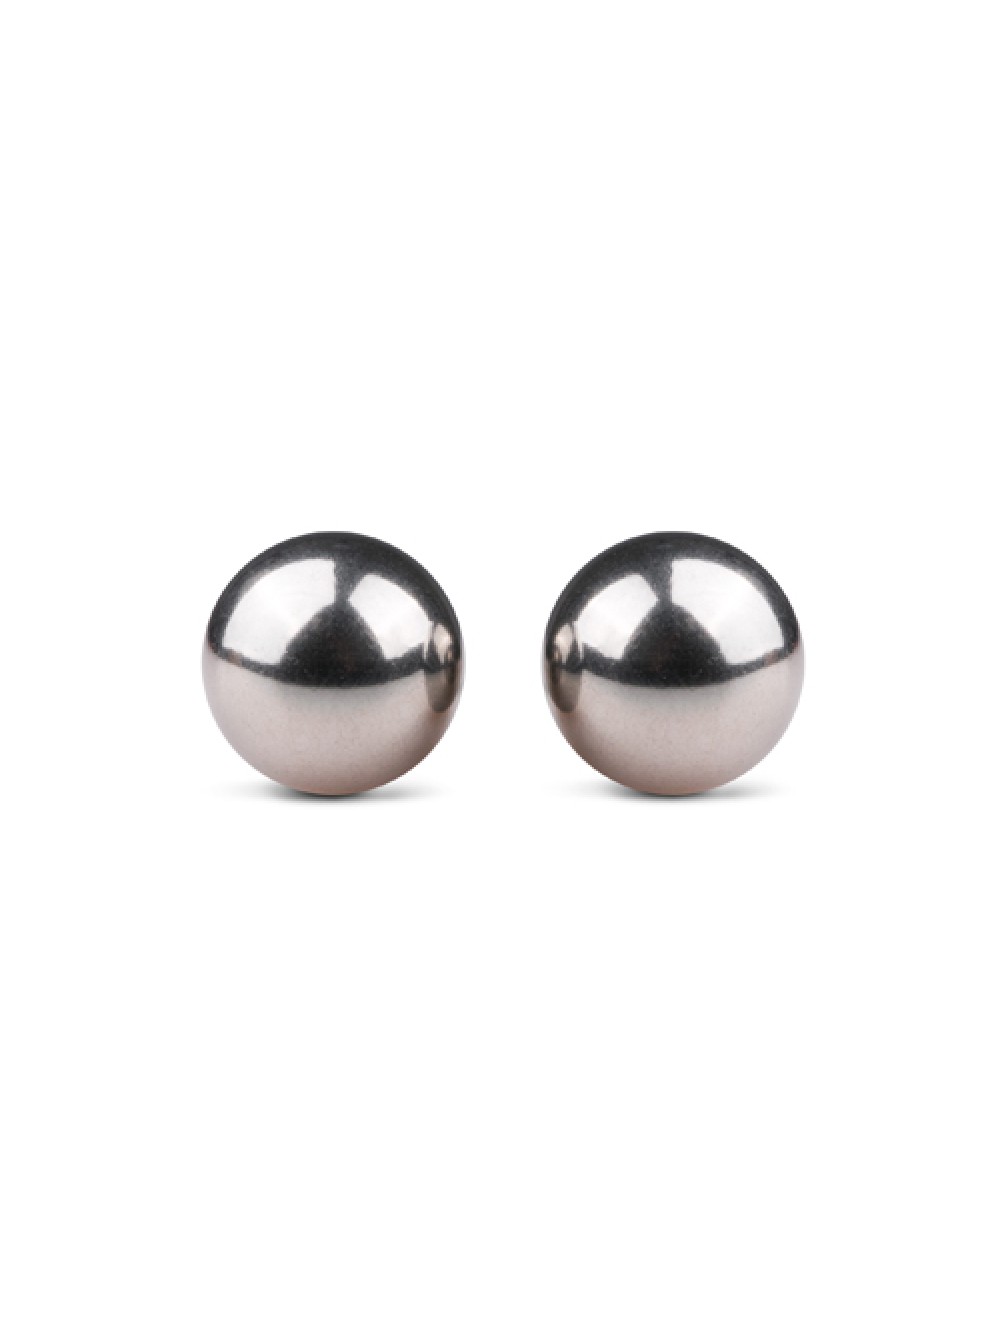 Silver ben wa balls - 19mm 8718627523186